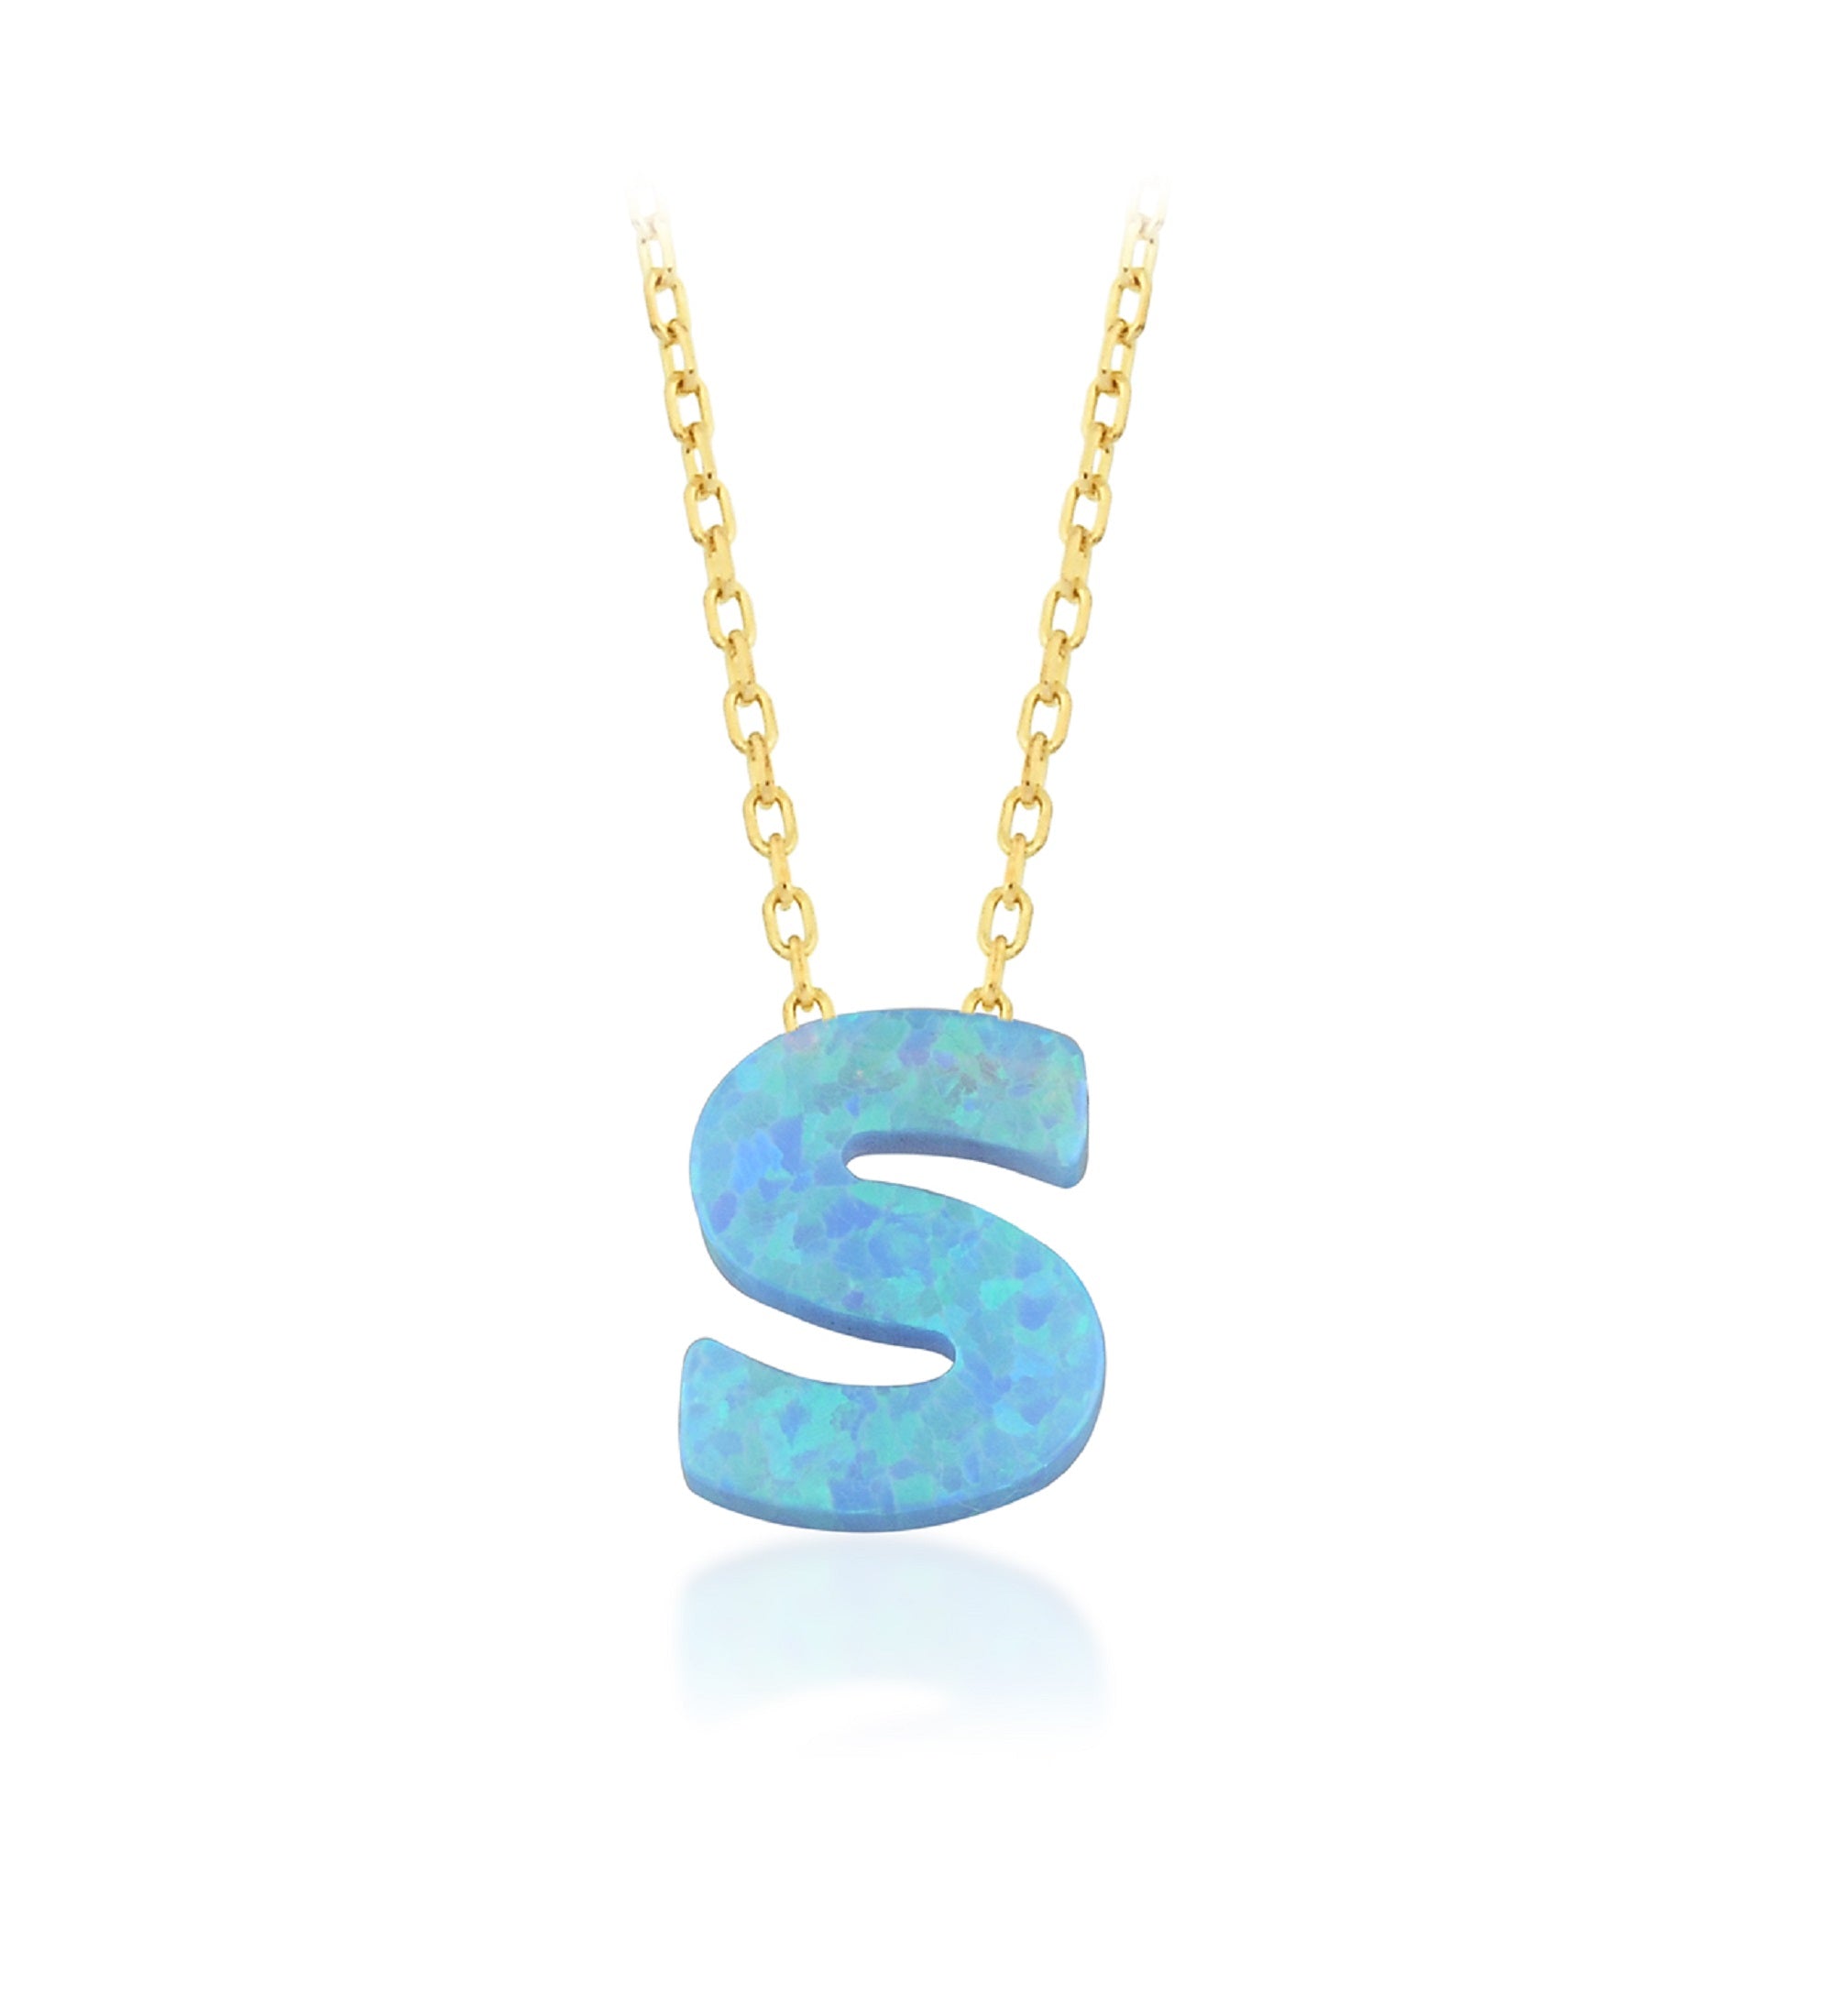 Blue Opal Initial Necklace - "S" letter pendant